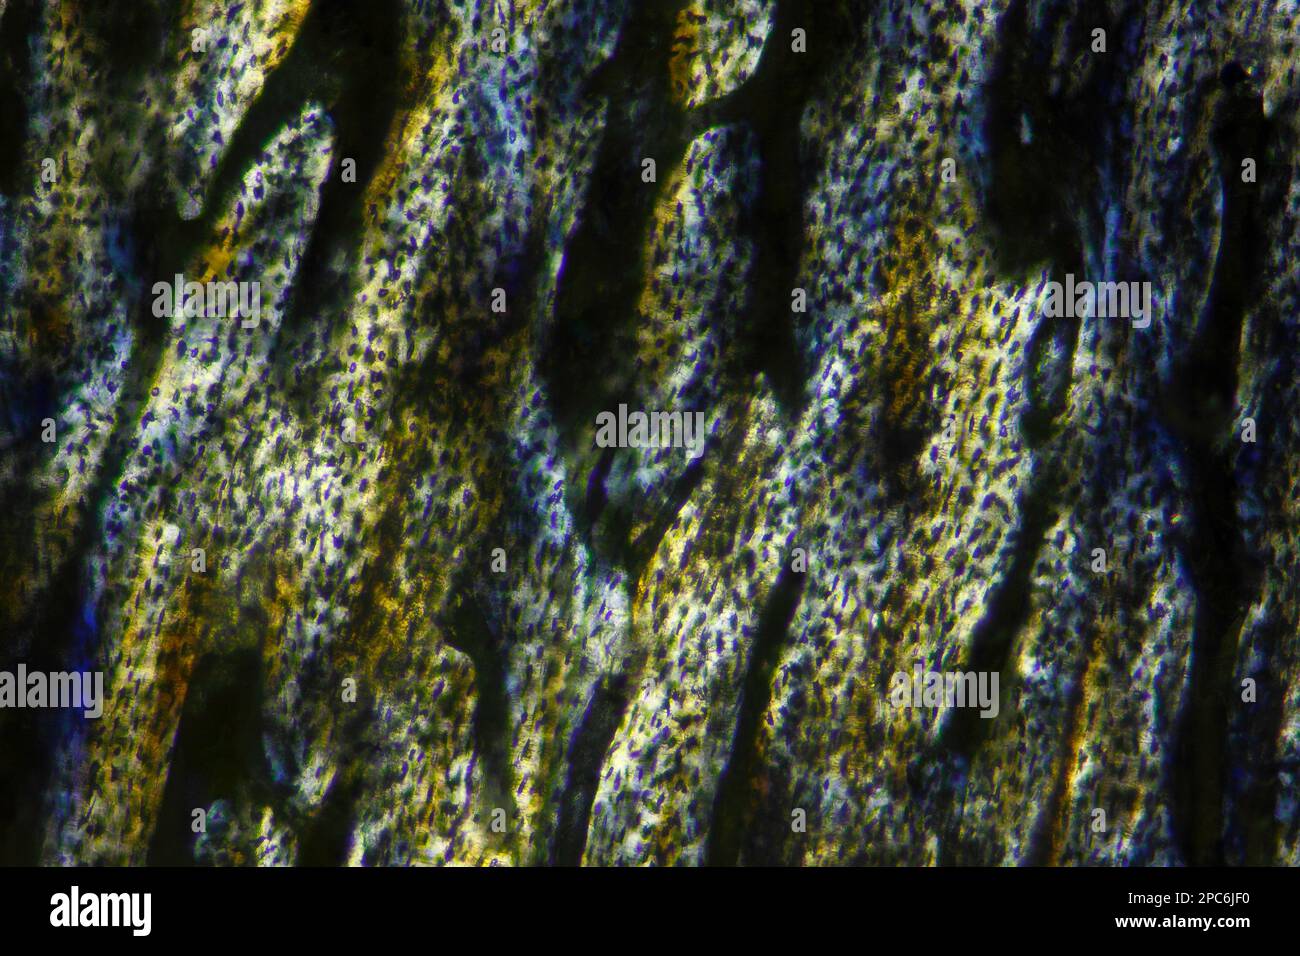 Mikroskopische Darstellung des Knochenschnitts der hauspute (Meleagris gallopavo domesticus). Polarisiertes Licht mit gekreuzten Polarisatoren. Stockfoto